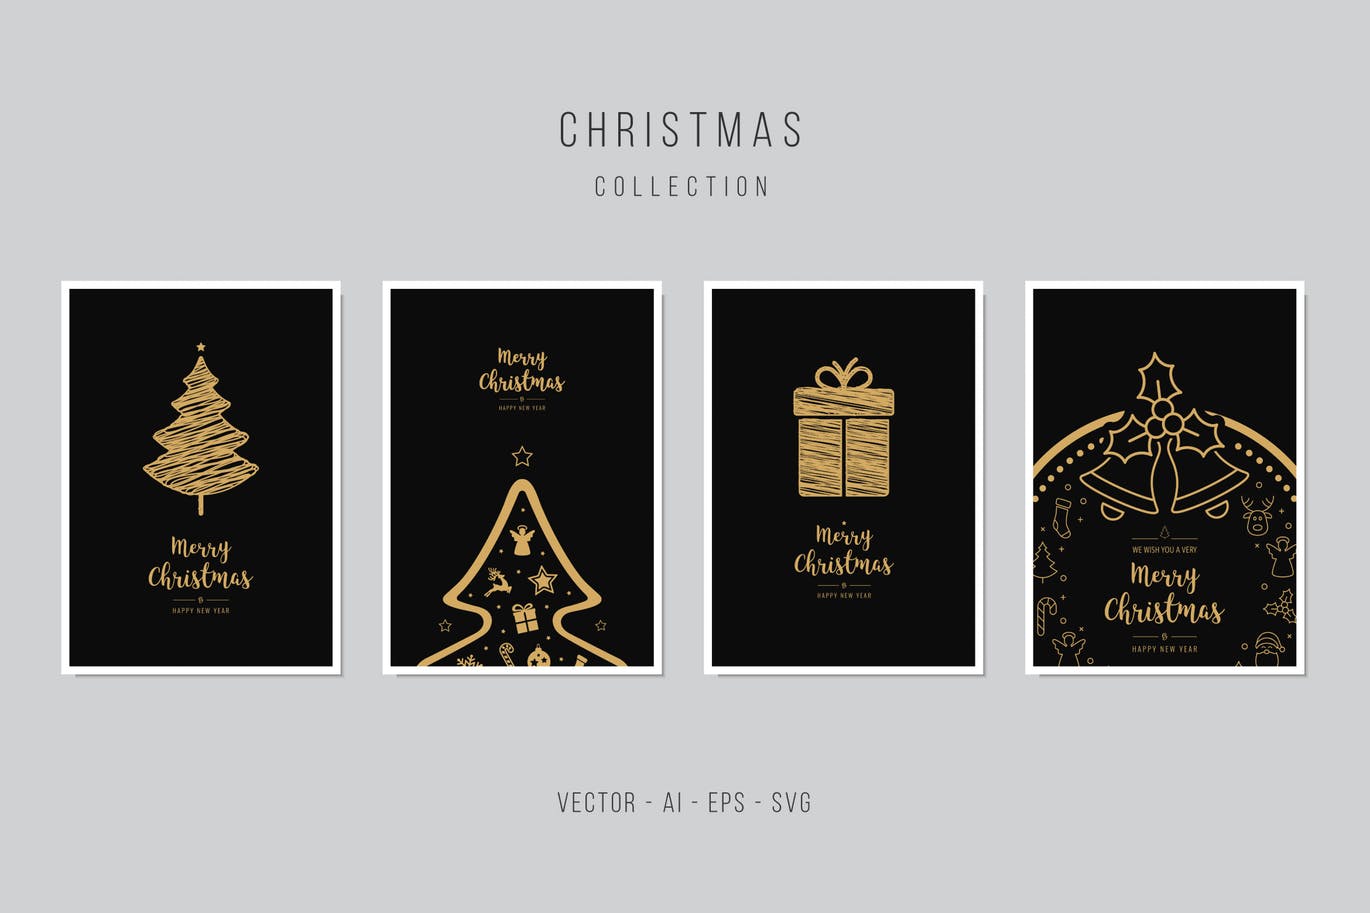 金色手绘图案背景圣诞节贺卡矢量设计模板集 Christmas Greeting Vector Card Set插图